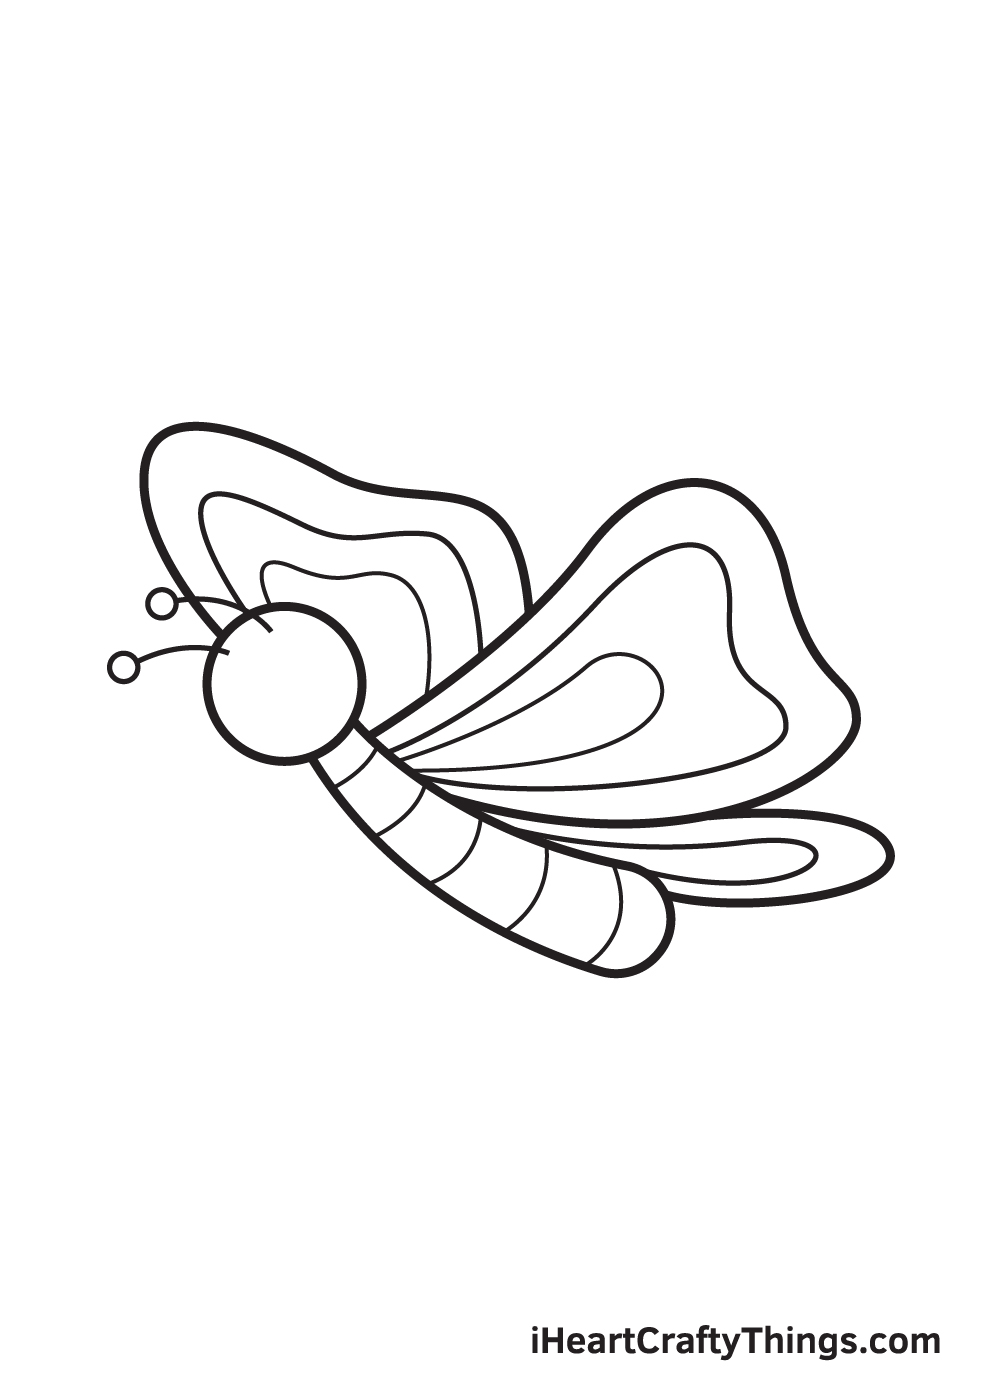 Butterfly DRAWING – STEP 8 - Hướng dẫn cụ thể kiểu vẽ con cái bướm giản dị và đơn giản với 9 bước cơ bản